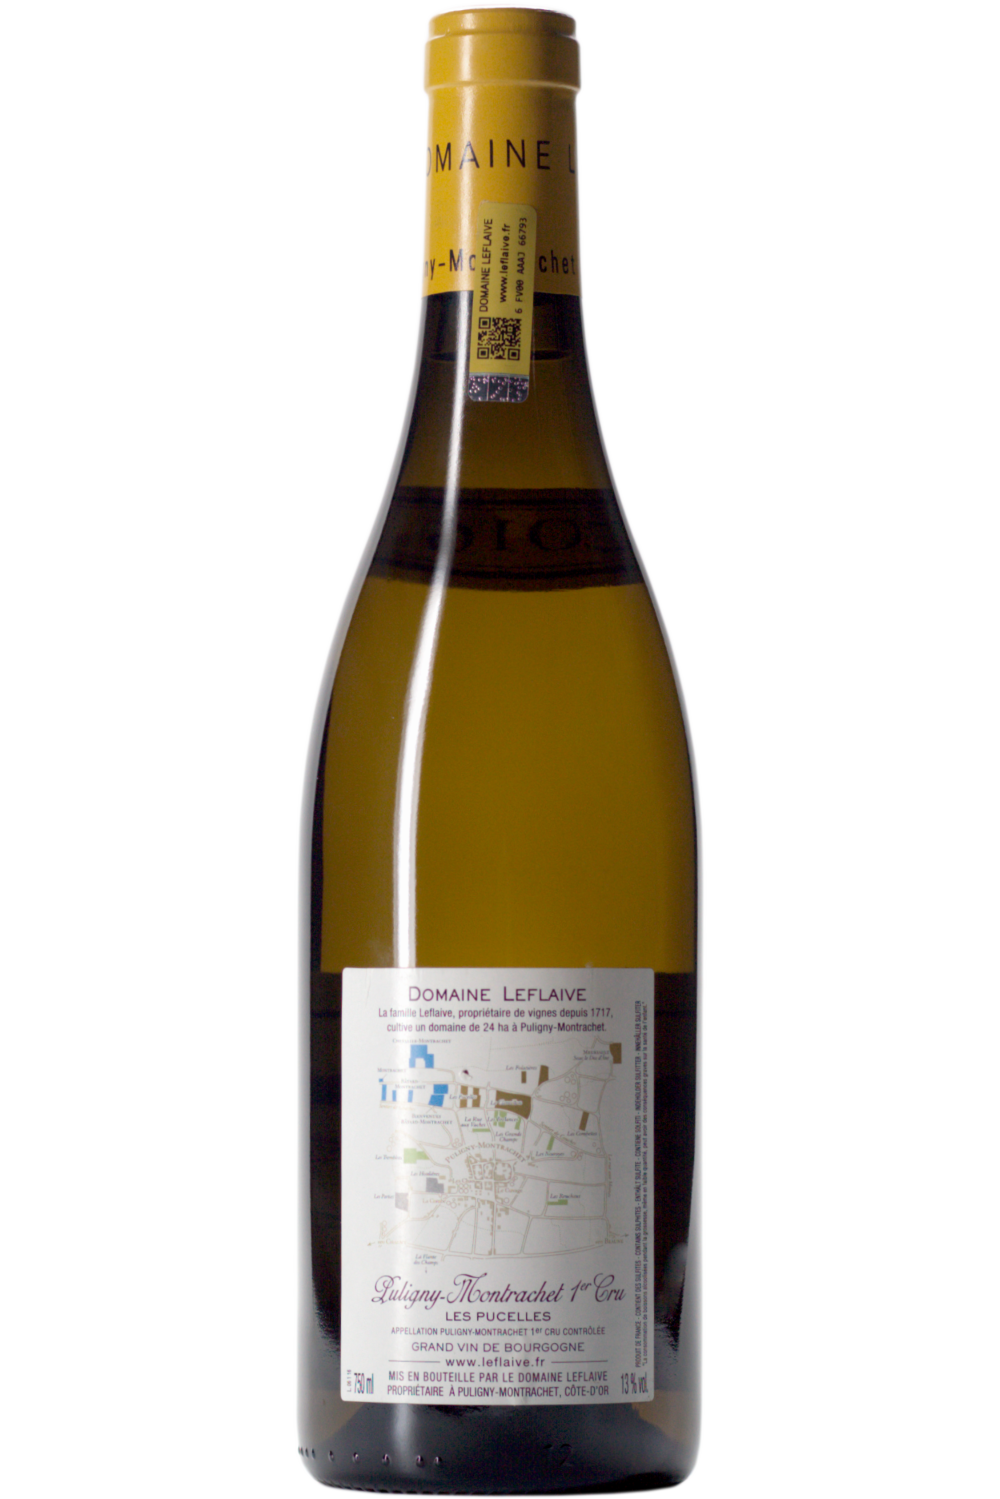 WineVins Domaine Leflaive Puligny-Montrachet Les Pucelles 1er Cru Branco 2016